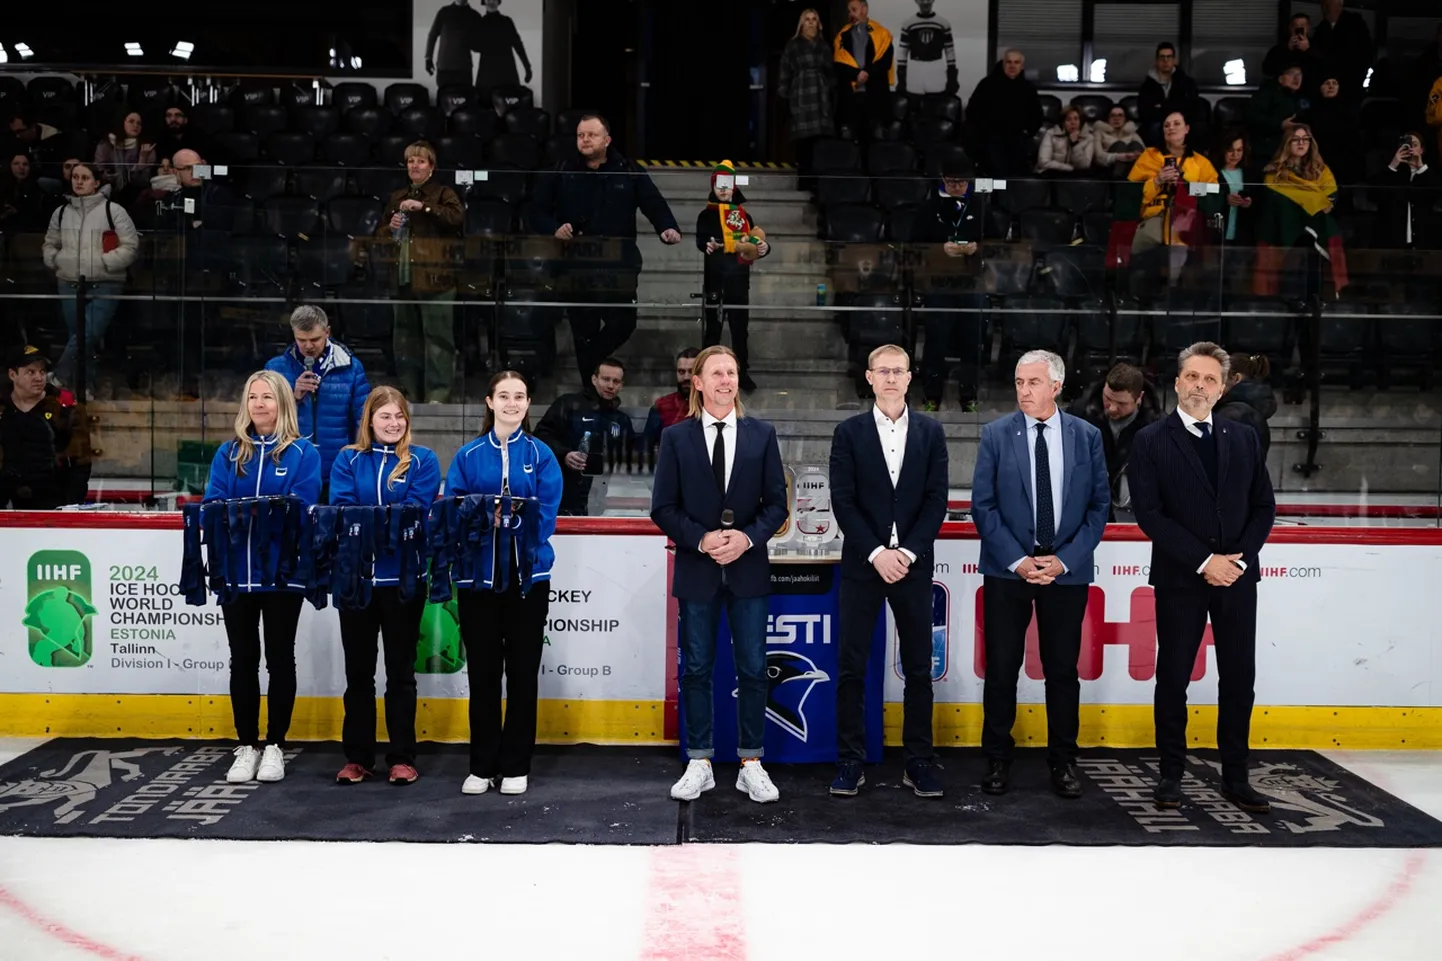 Turniiri autasustamine, millel osales IIHF president Luc Tardif ja kultuuriministeeriumi asekantsler Tarvi Pürn. Foto tegi Cathrine Kõrtsmik.